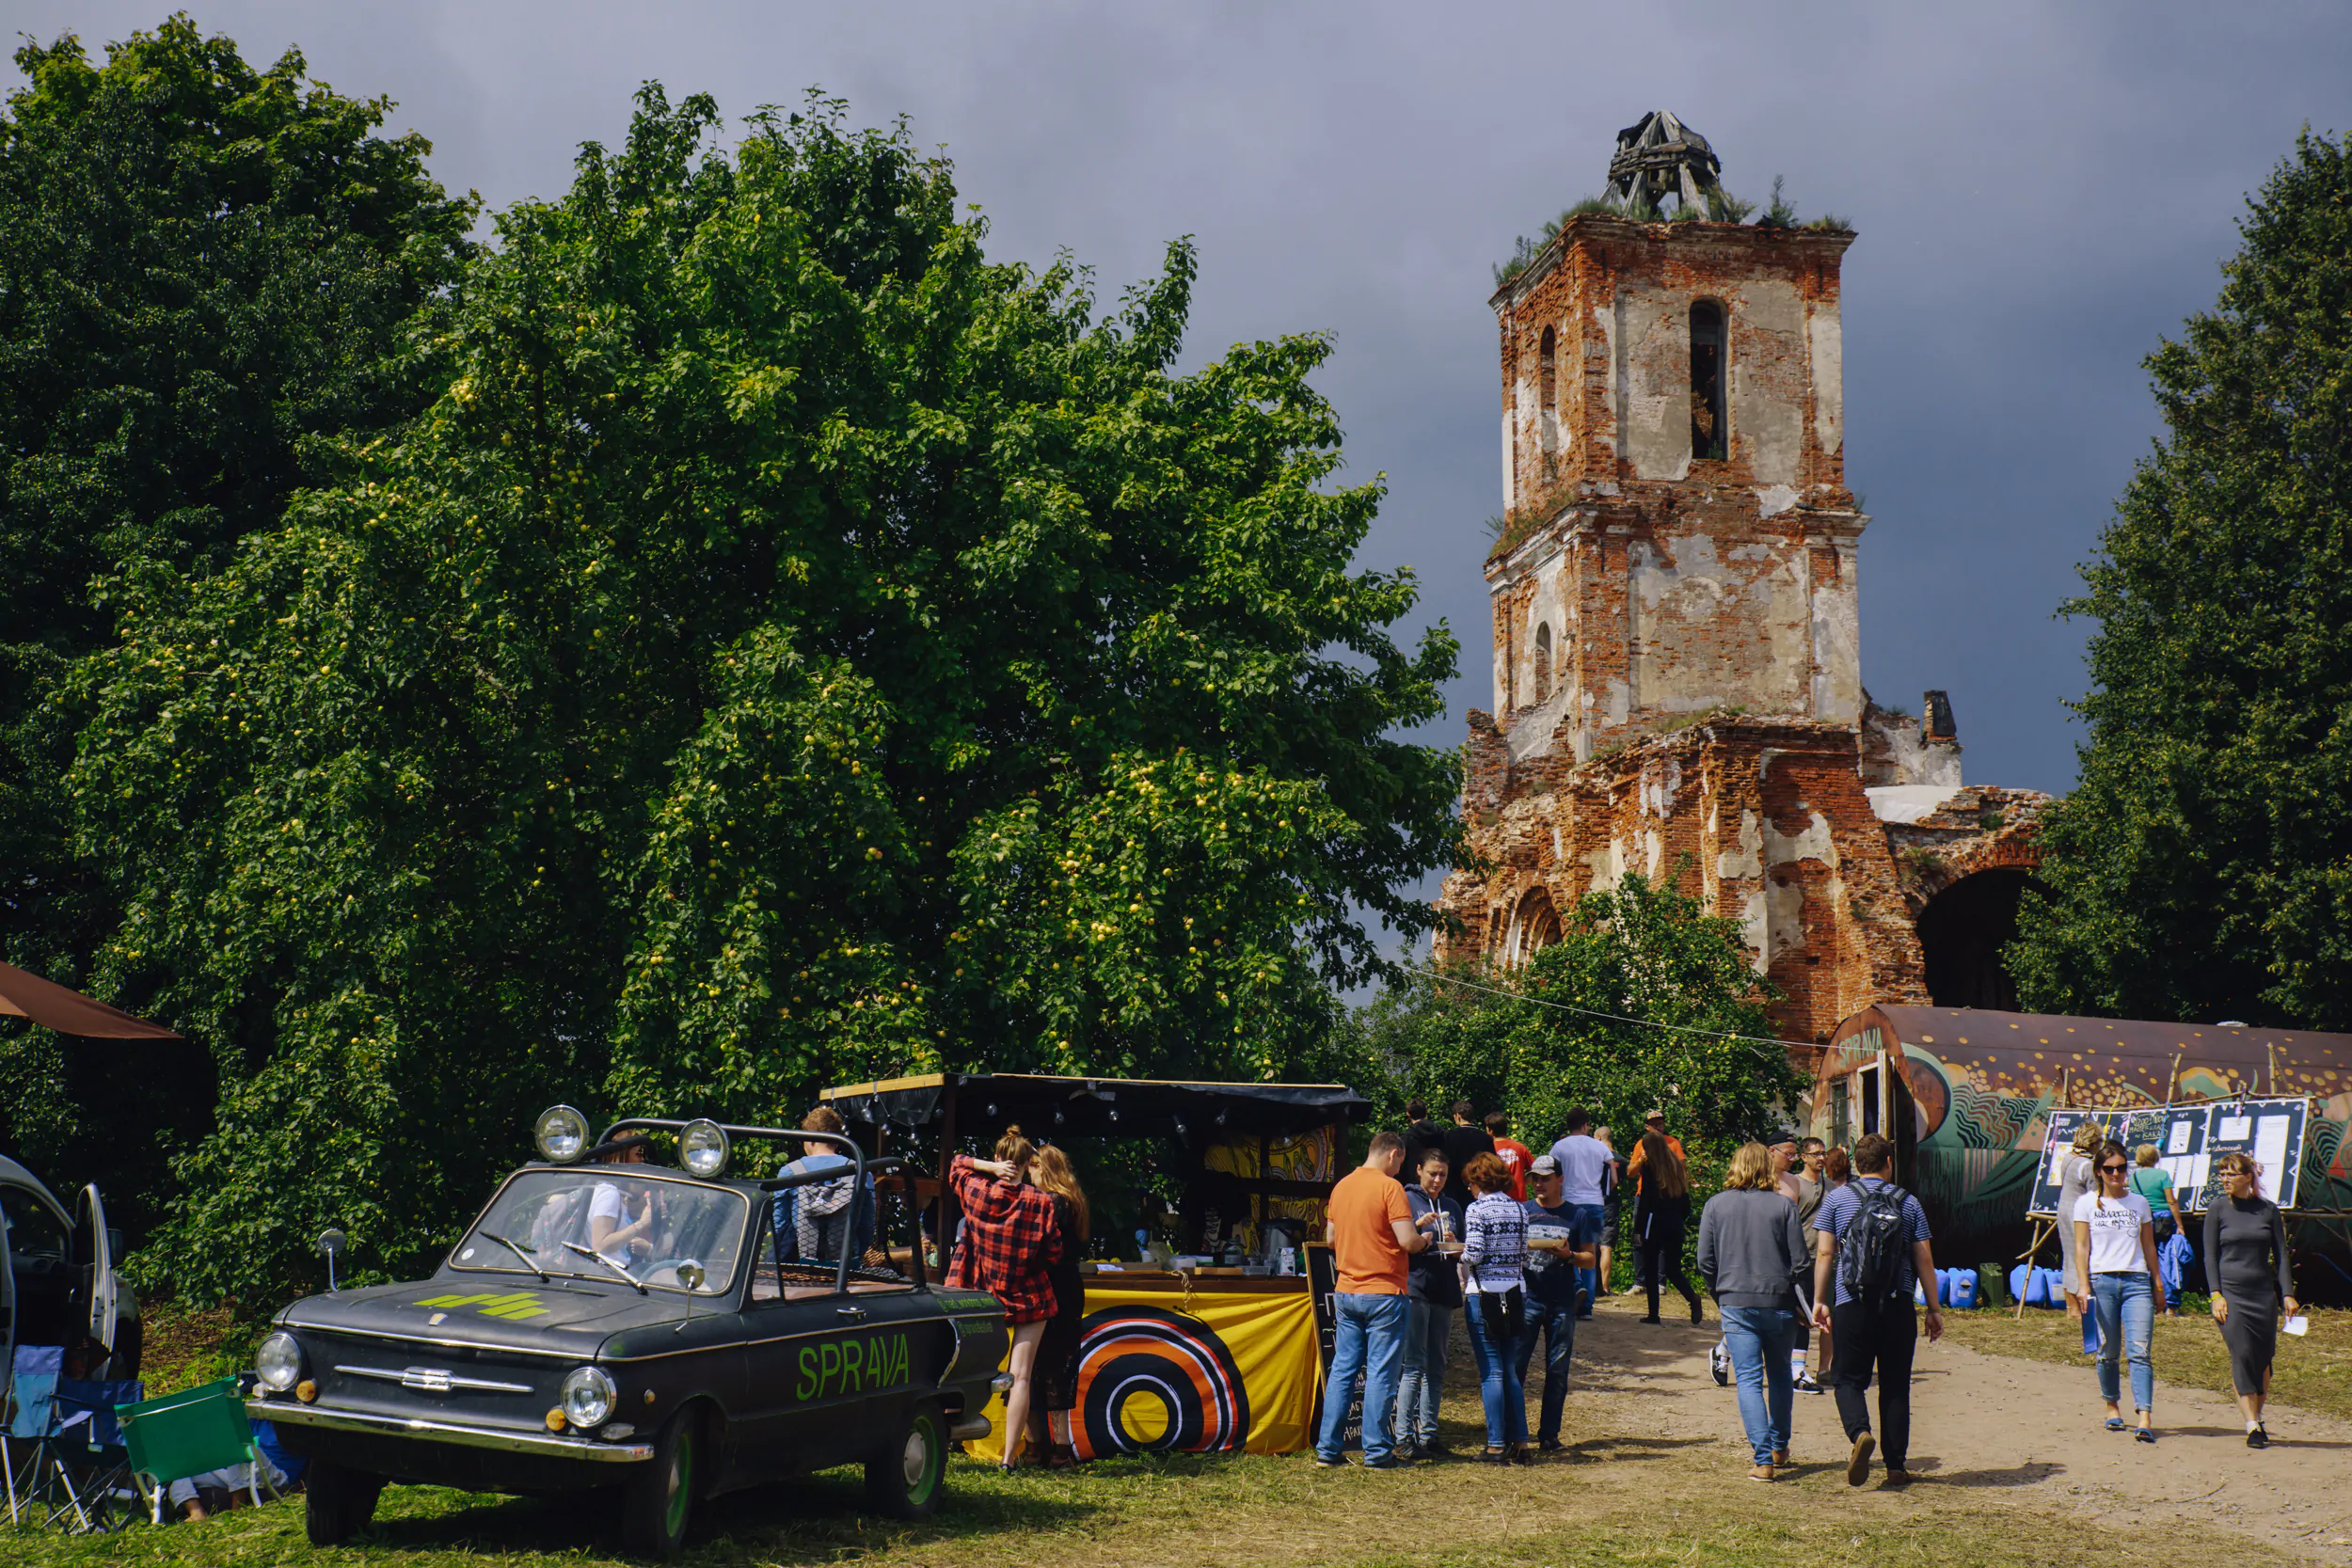 6-7 августа в деревне Белая Церковь пройдет фестиваль SPRAVA